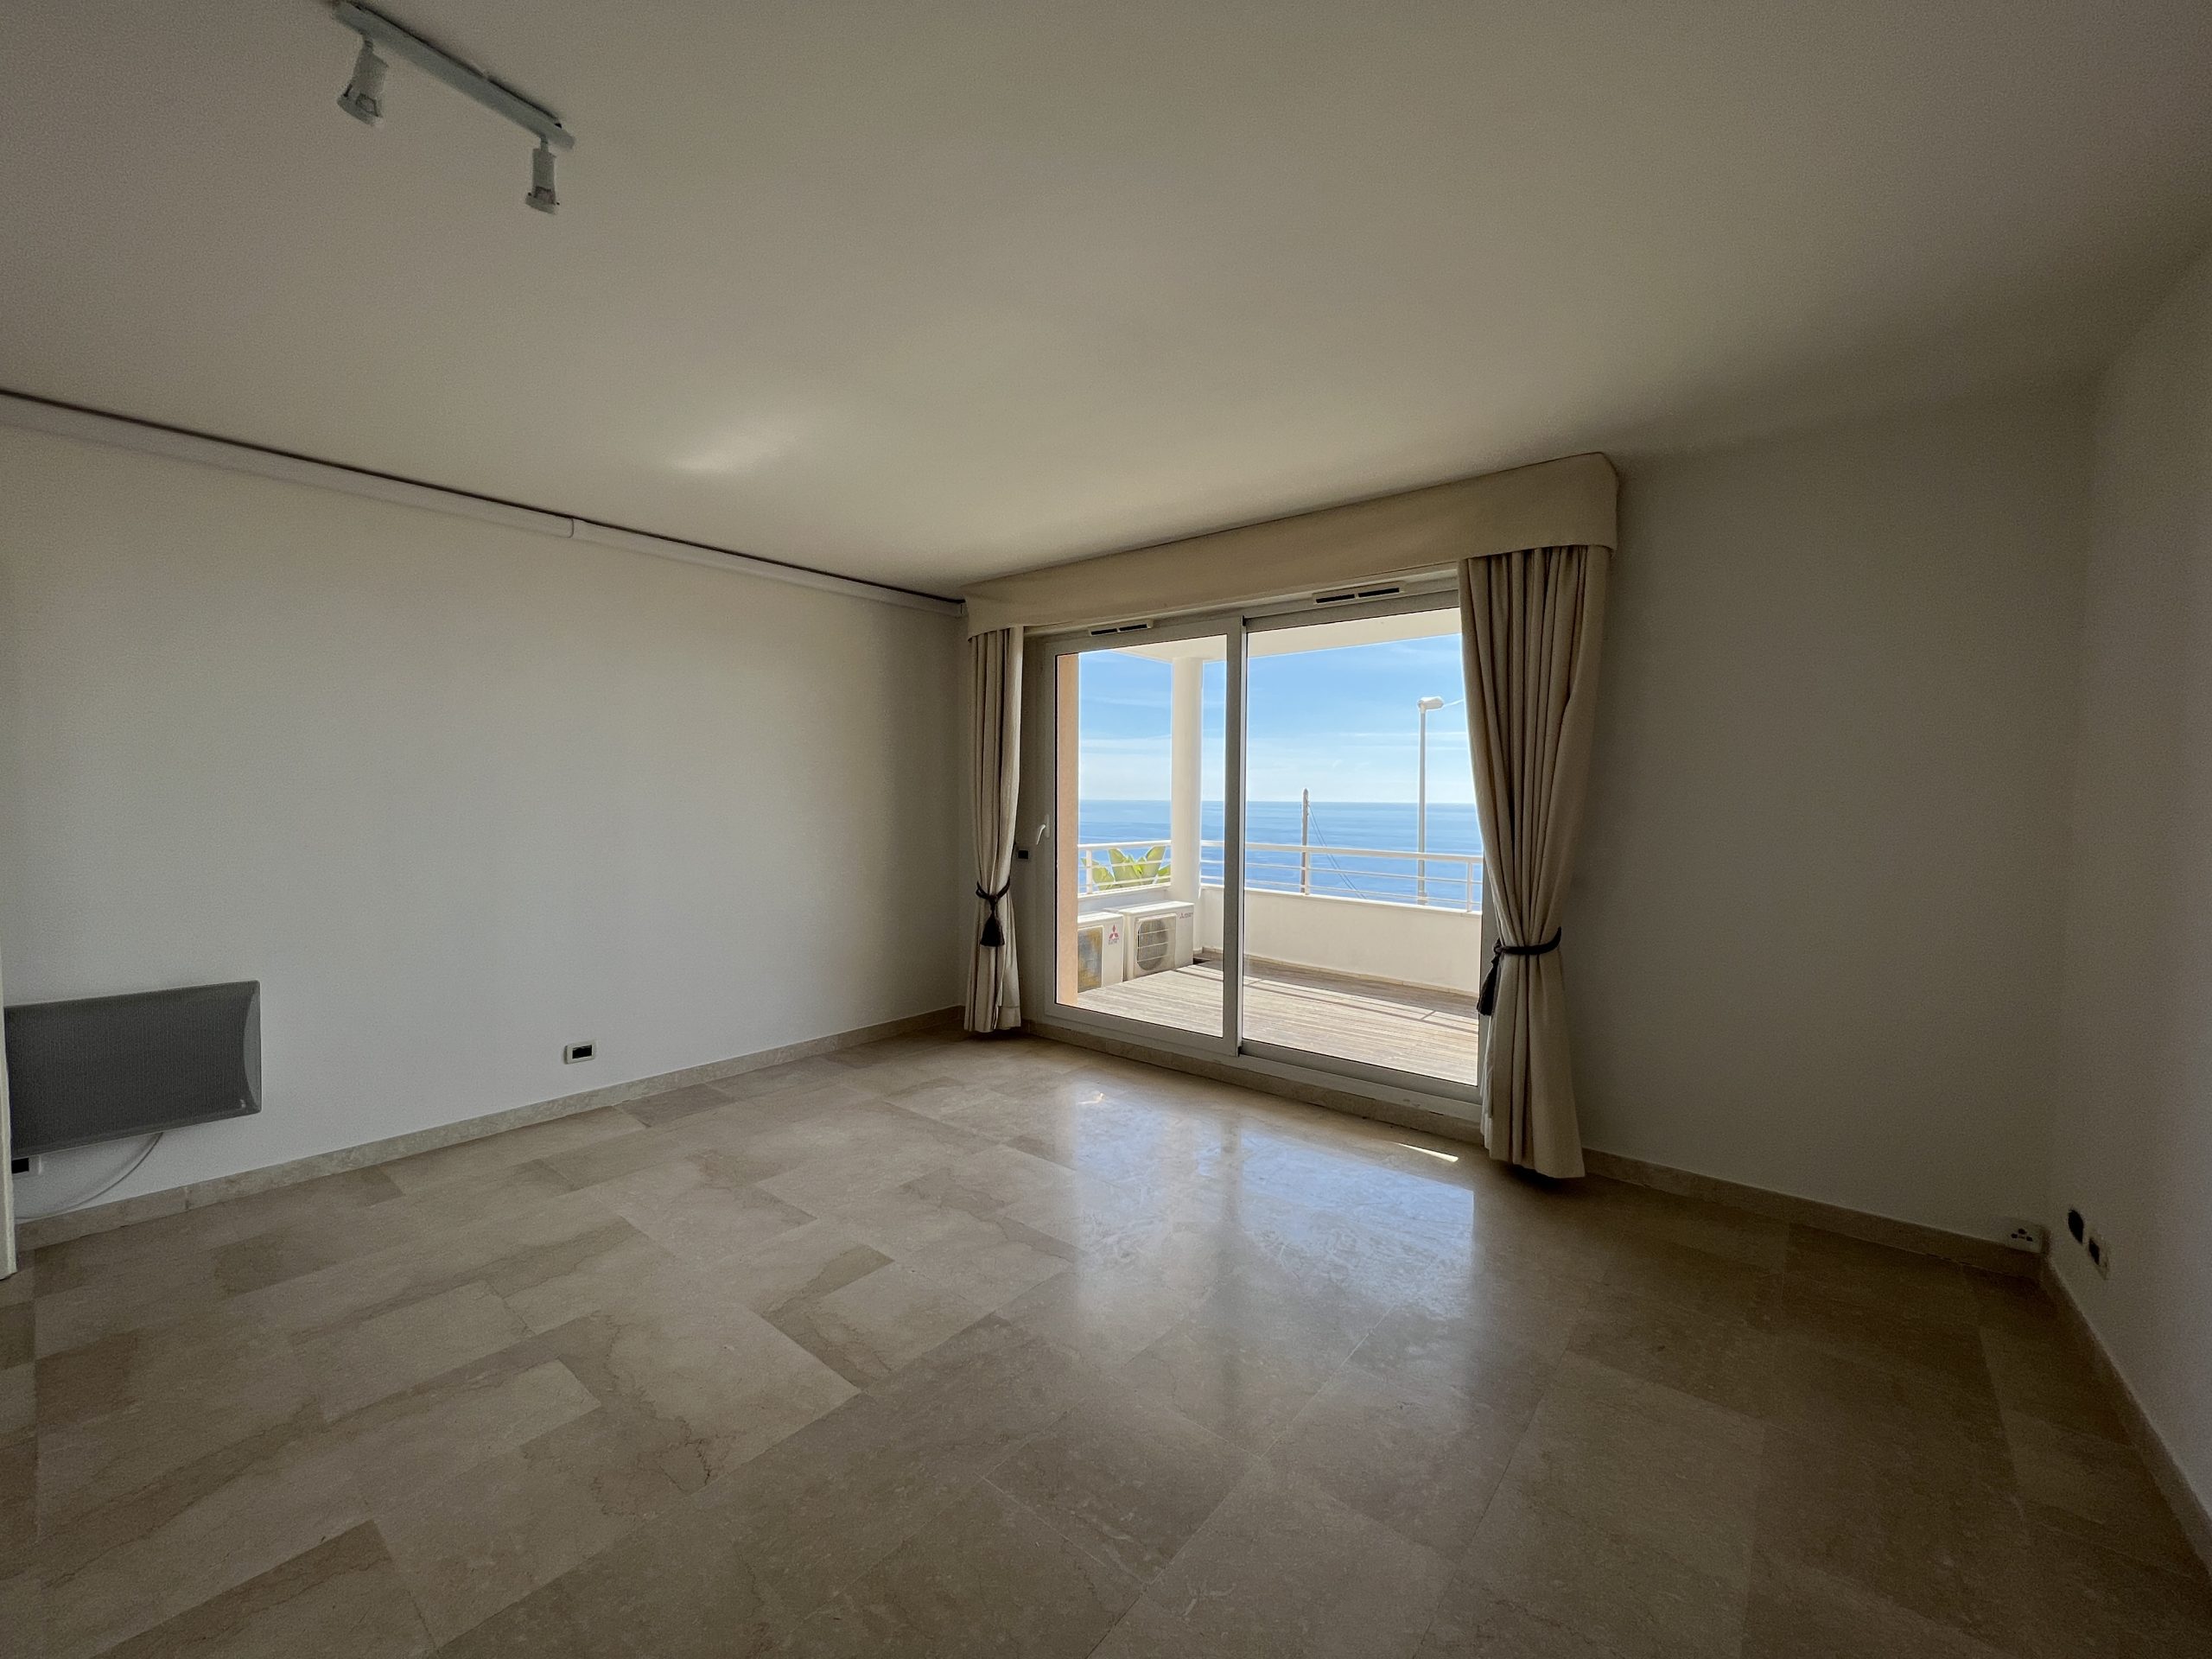 Beausoleil – Magnifique 3 pièces avec terrasse, vue panoramique sur la mer et Monaco